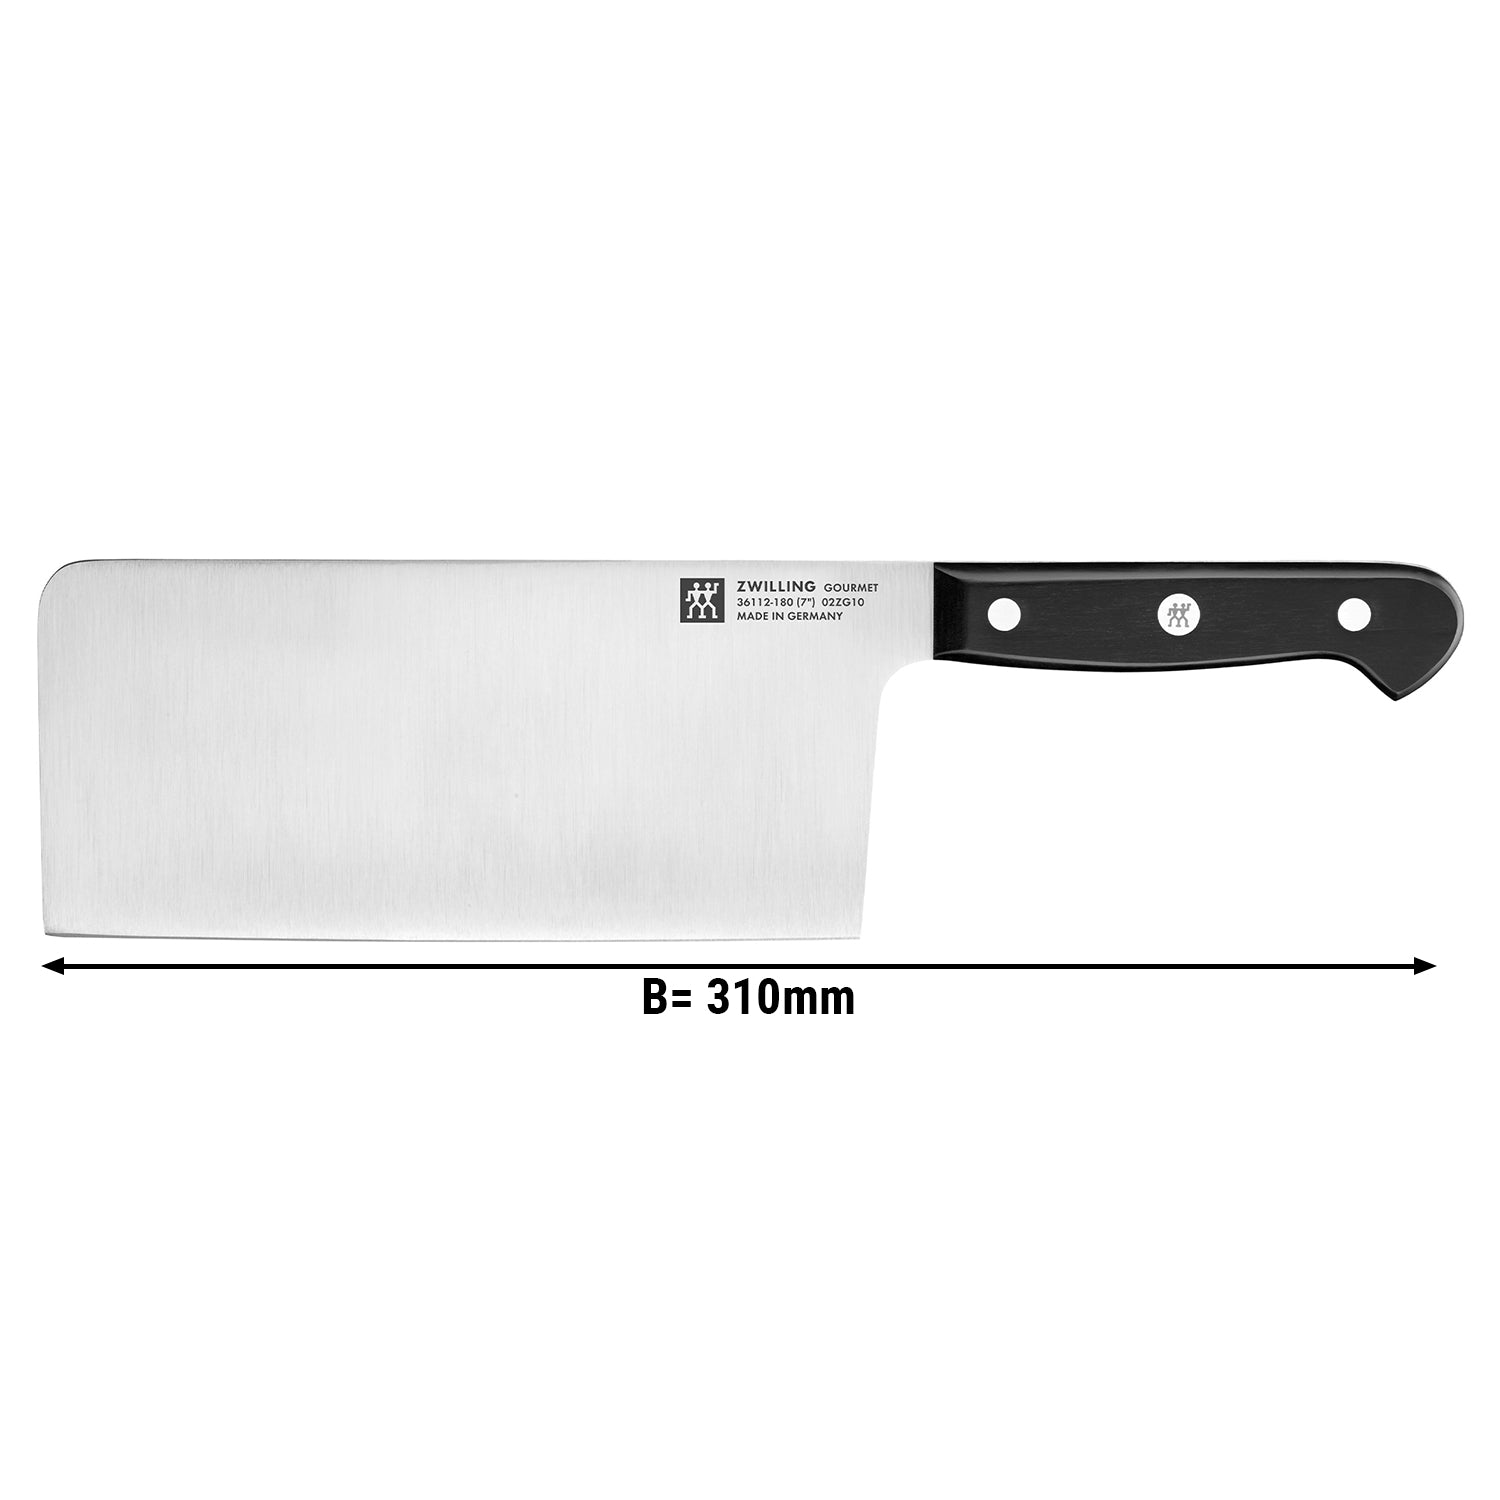 ZWILLING | GOURMET - Kinesisk kokkekniv - blad 18cm